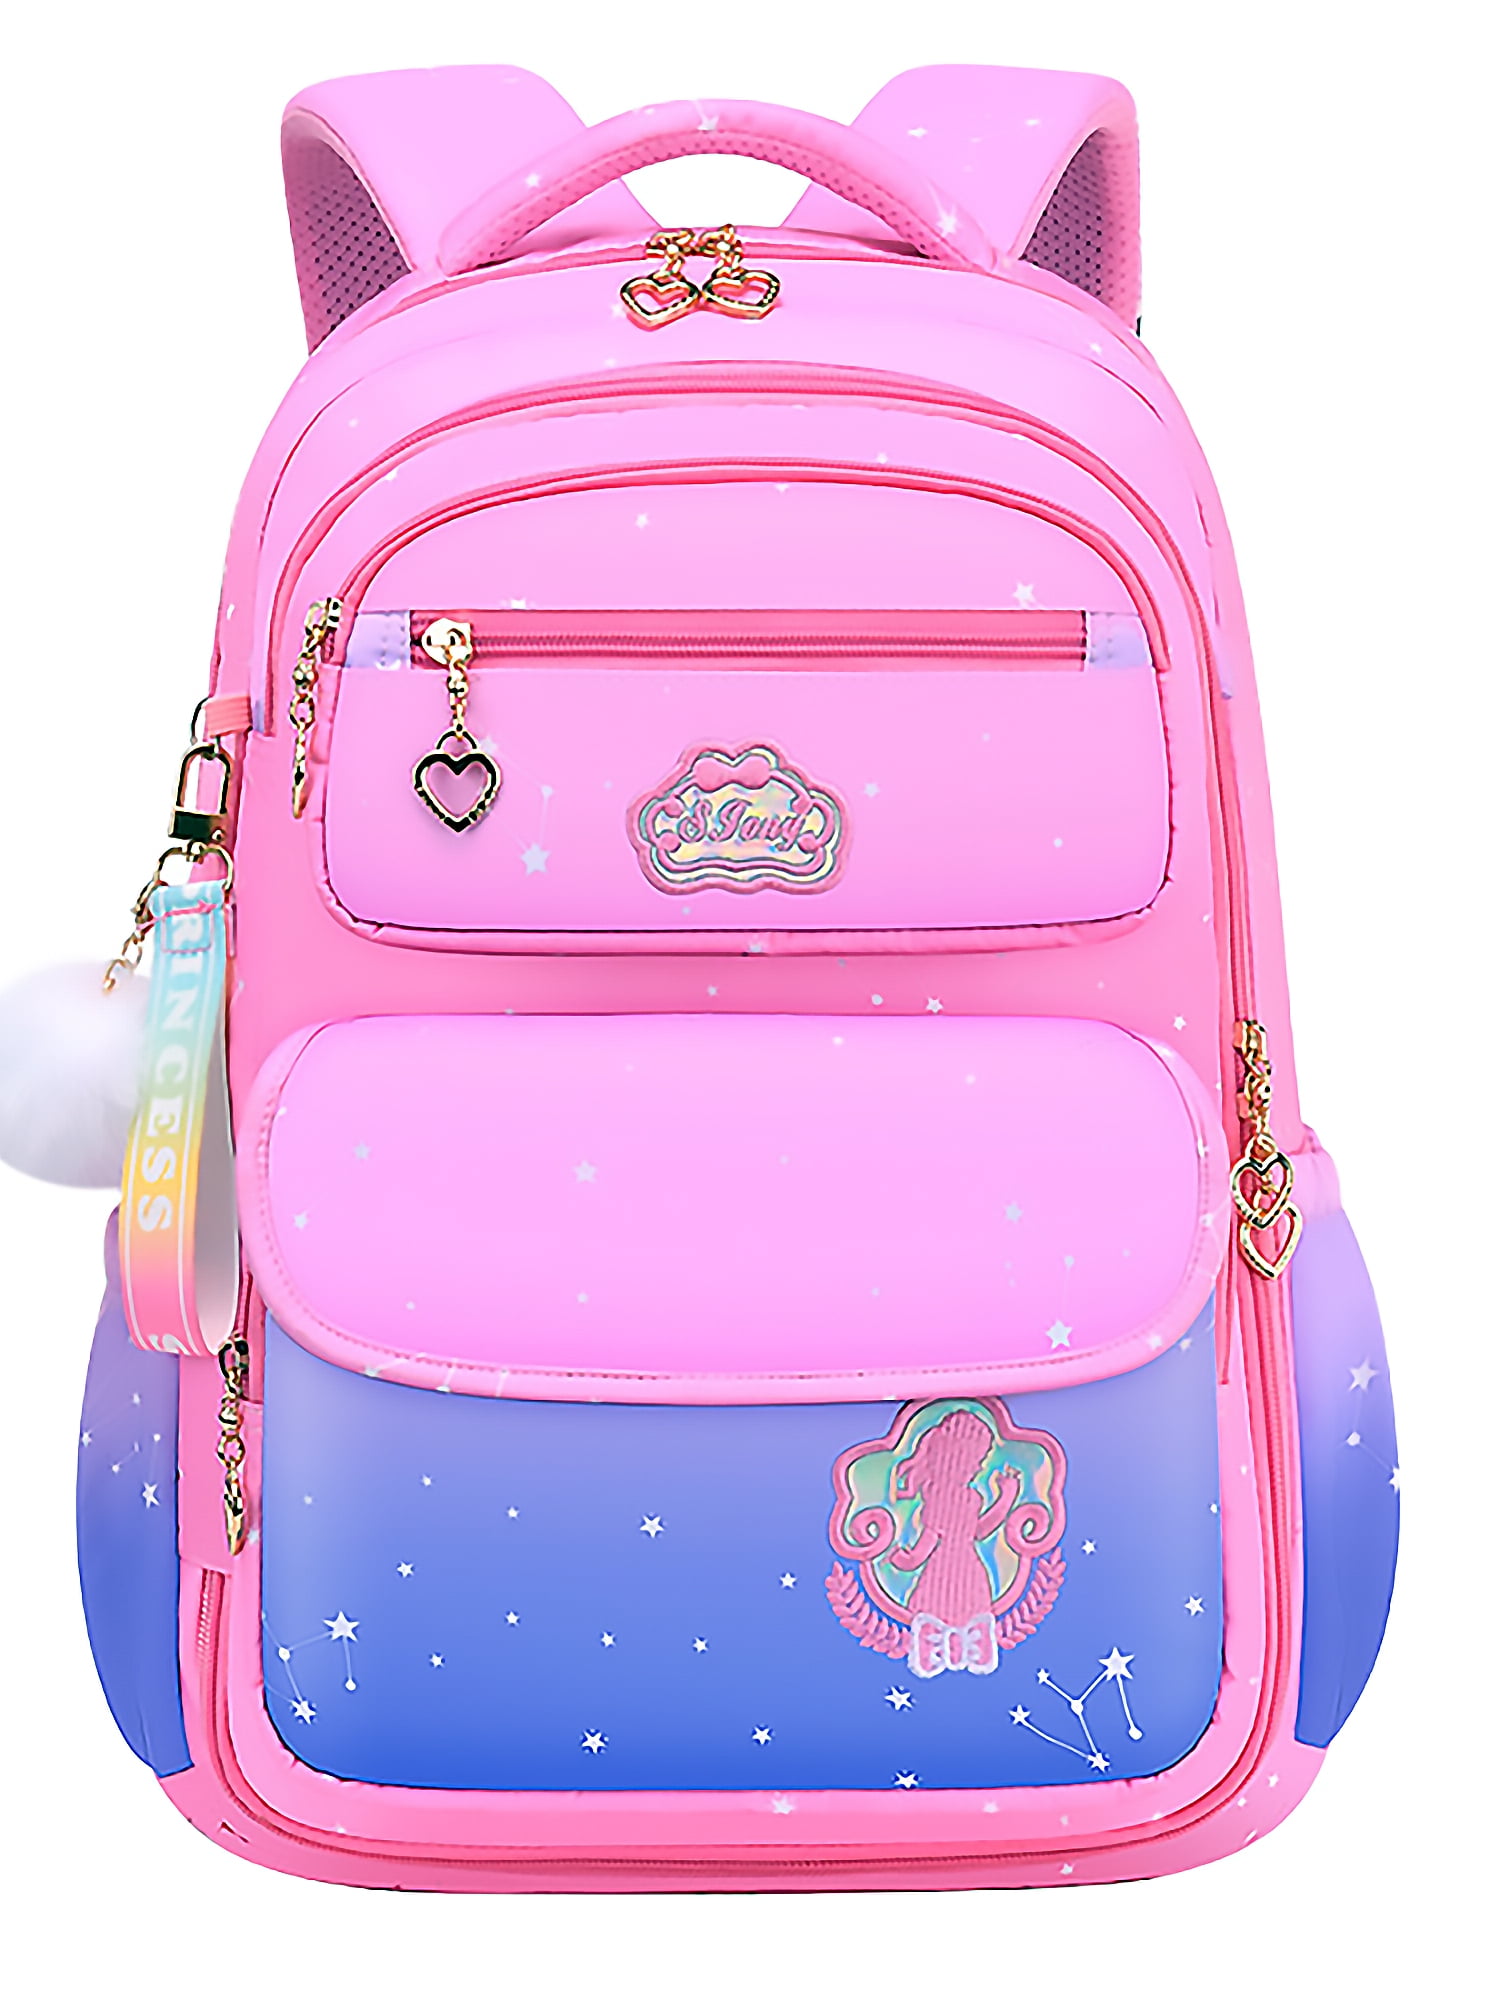 Aursear School Bags for Girls,Children School Backpacks Girls Bookbag ...